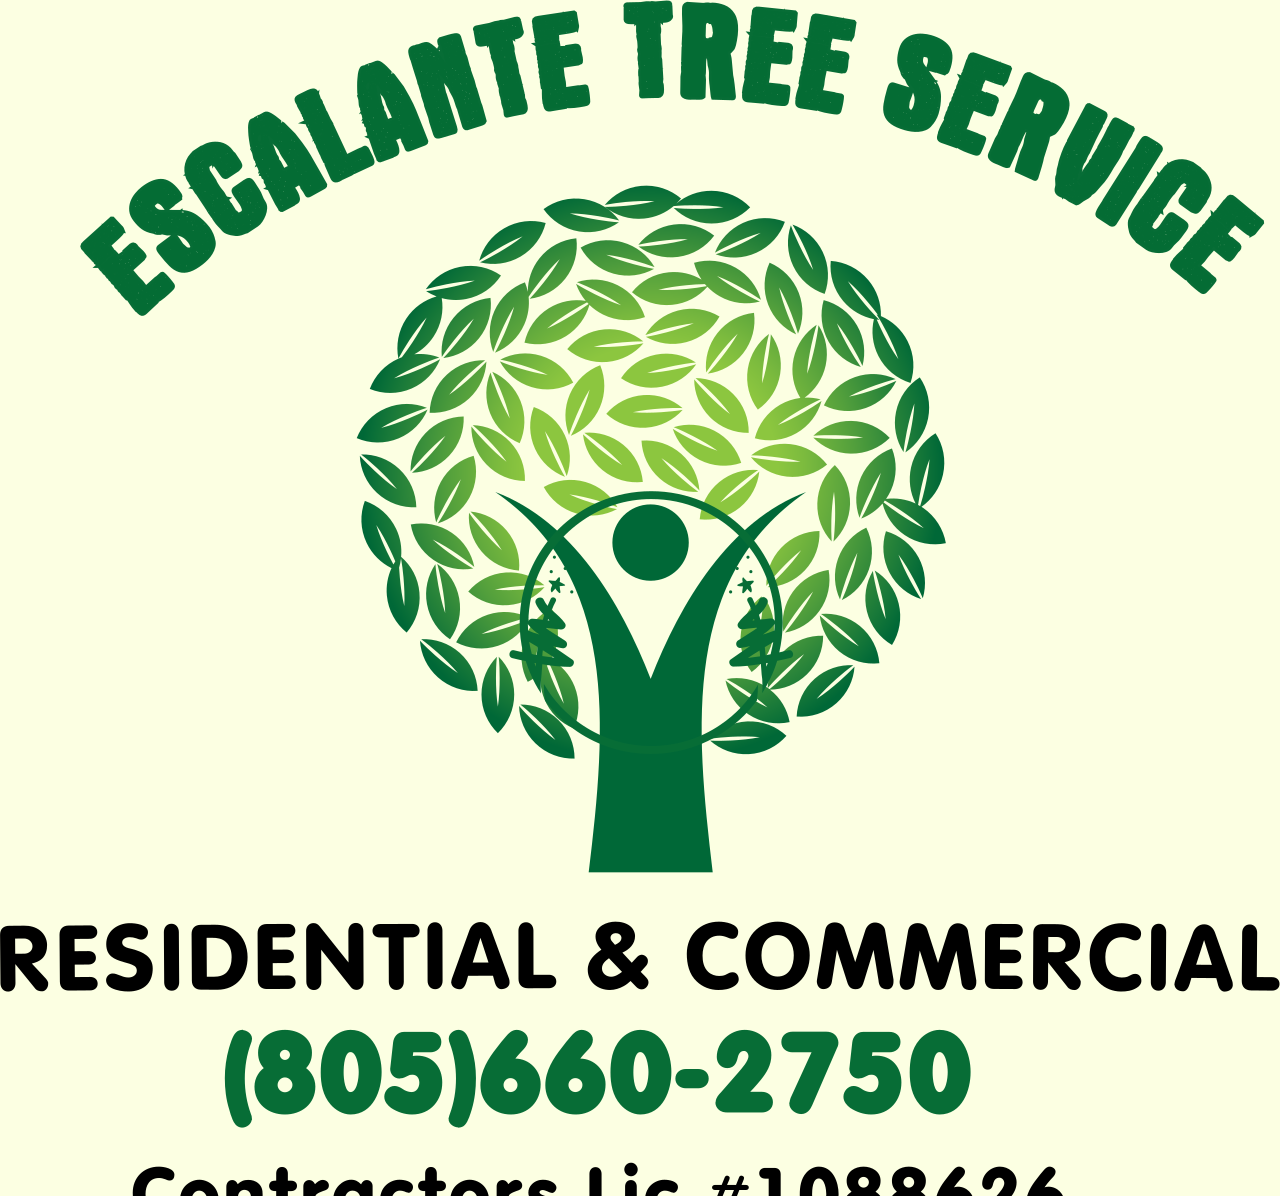 ESCALANTE TREE SERVICE 's web page